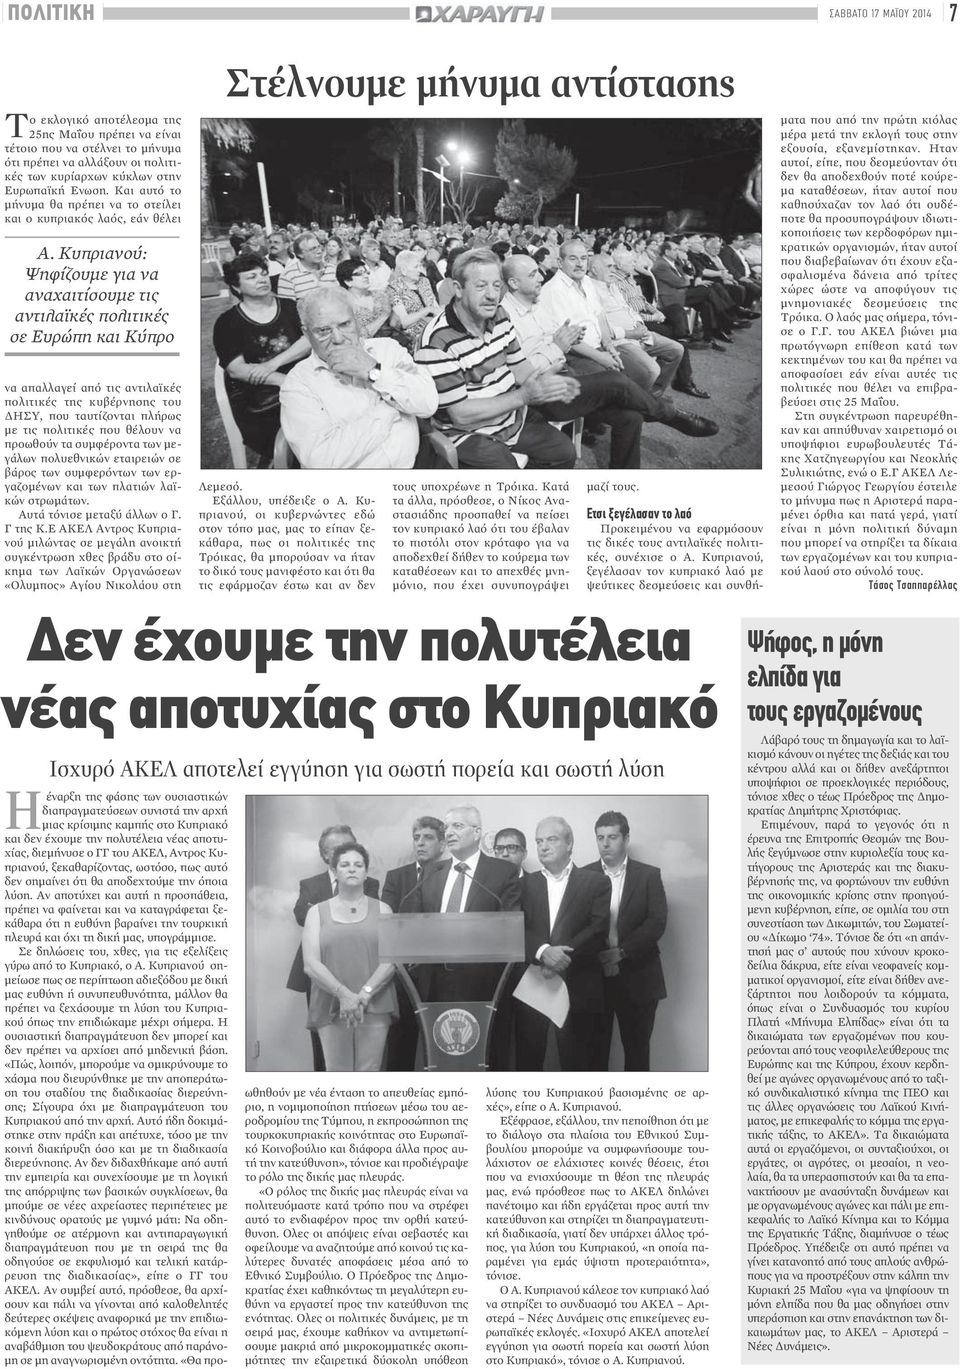 Κυπριανού: Ψηφίζουμε για να αναχαιτίσουμε τις αντιλαϊκές πολιτικές σε Ευρώπη και Κύπρο να απαλλαγεί από τις αντιλαϊκές πολιτικές της κυβέρνησης του ΔΗΣΥ, που ταυτίζονται πλήρως με τις πολιτικές που